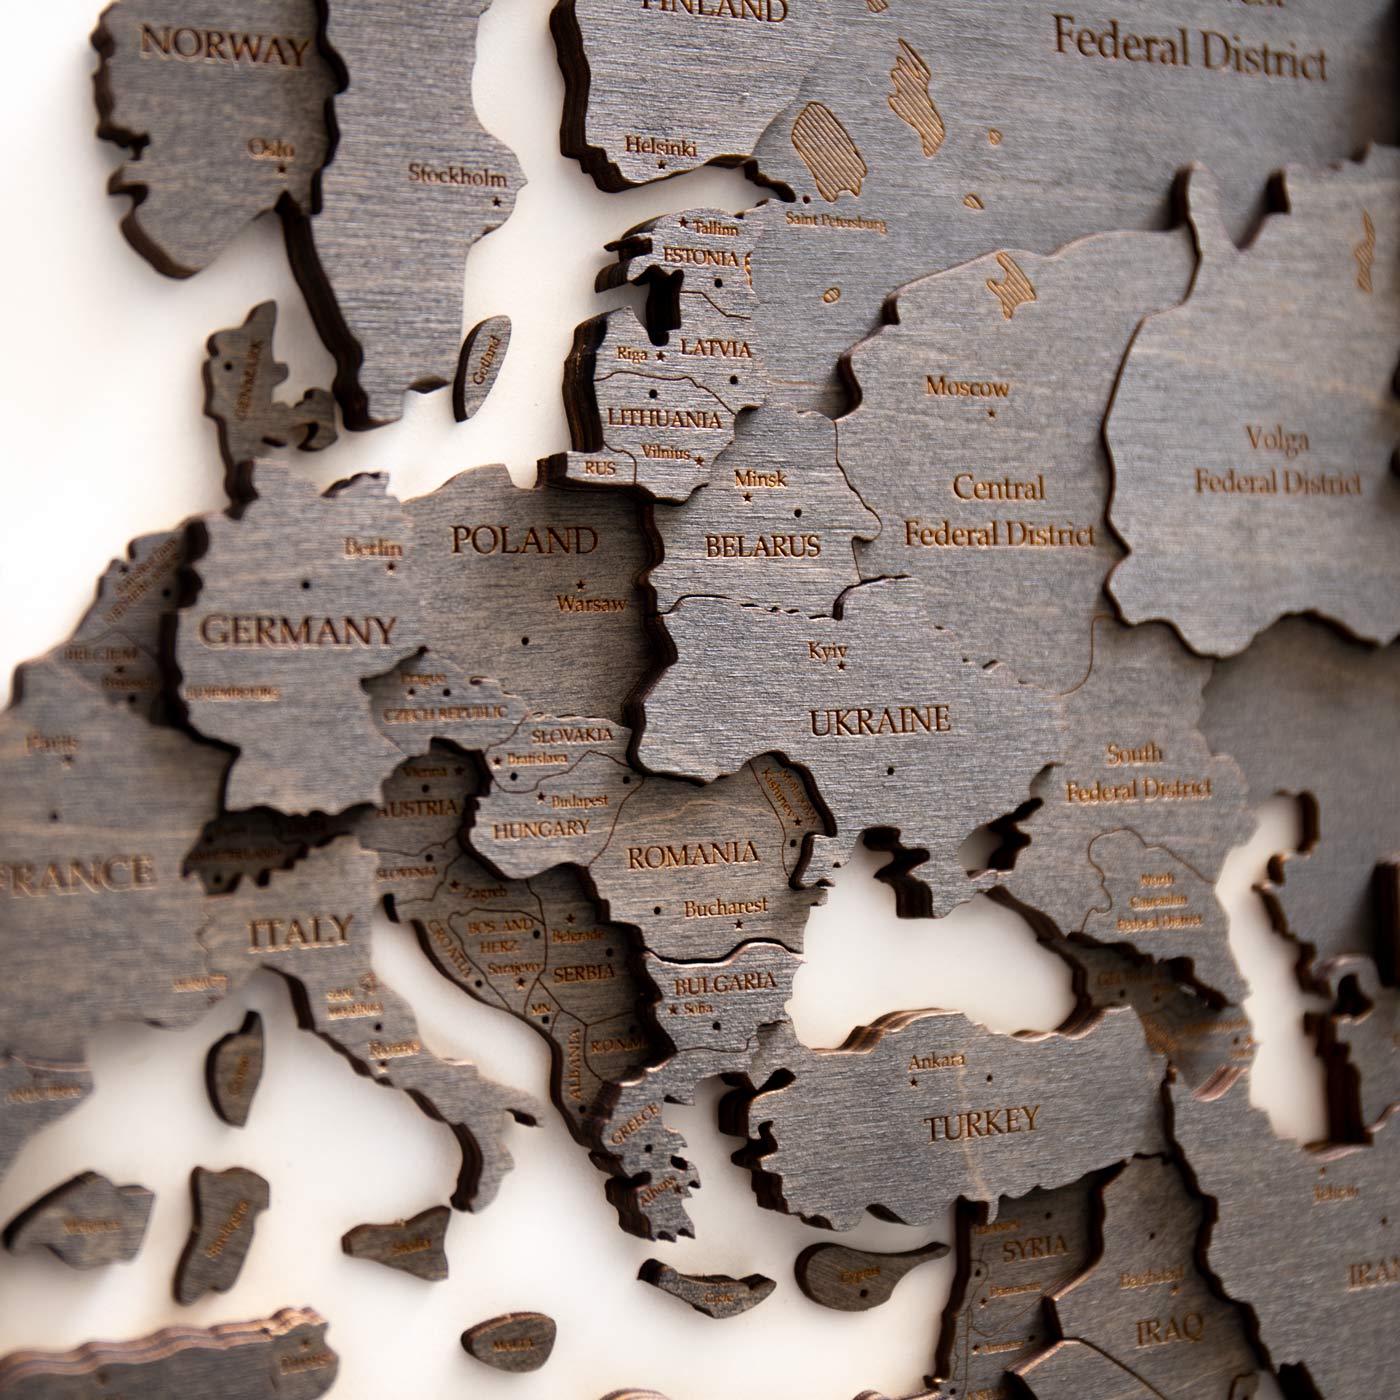 Ebony 3d wooden world map. Wall wooden decor. Ksilart